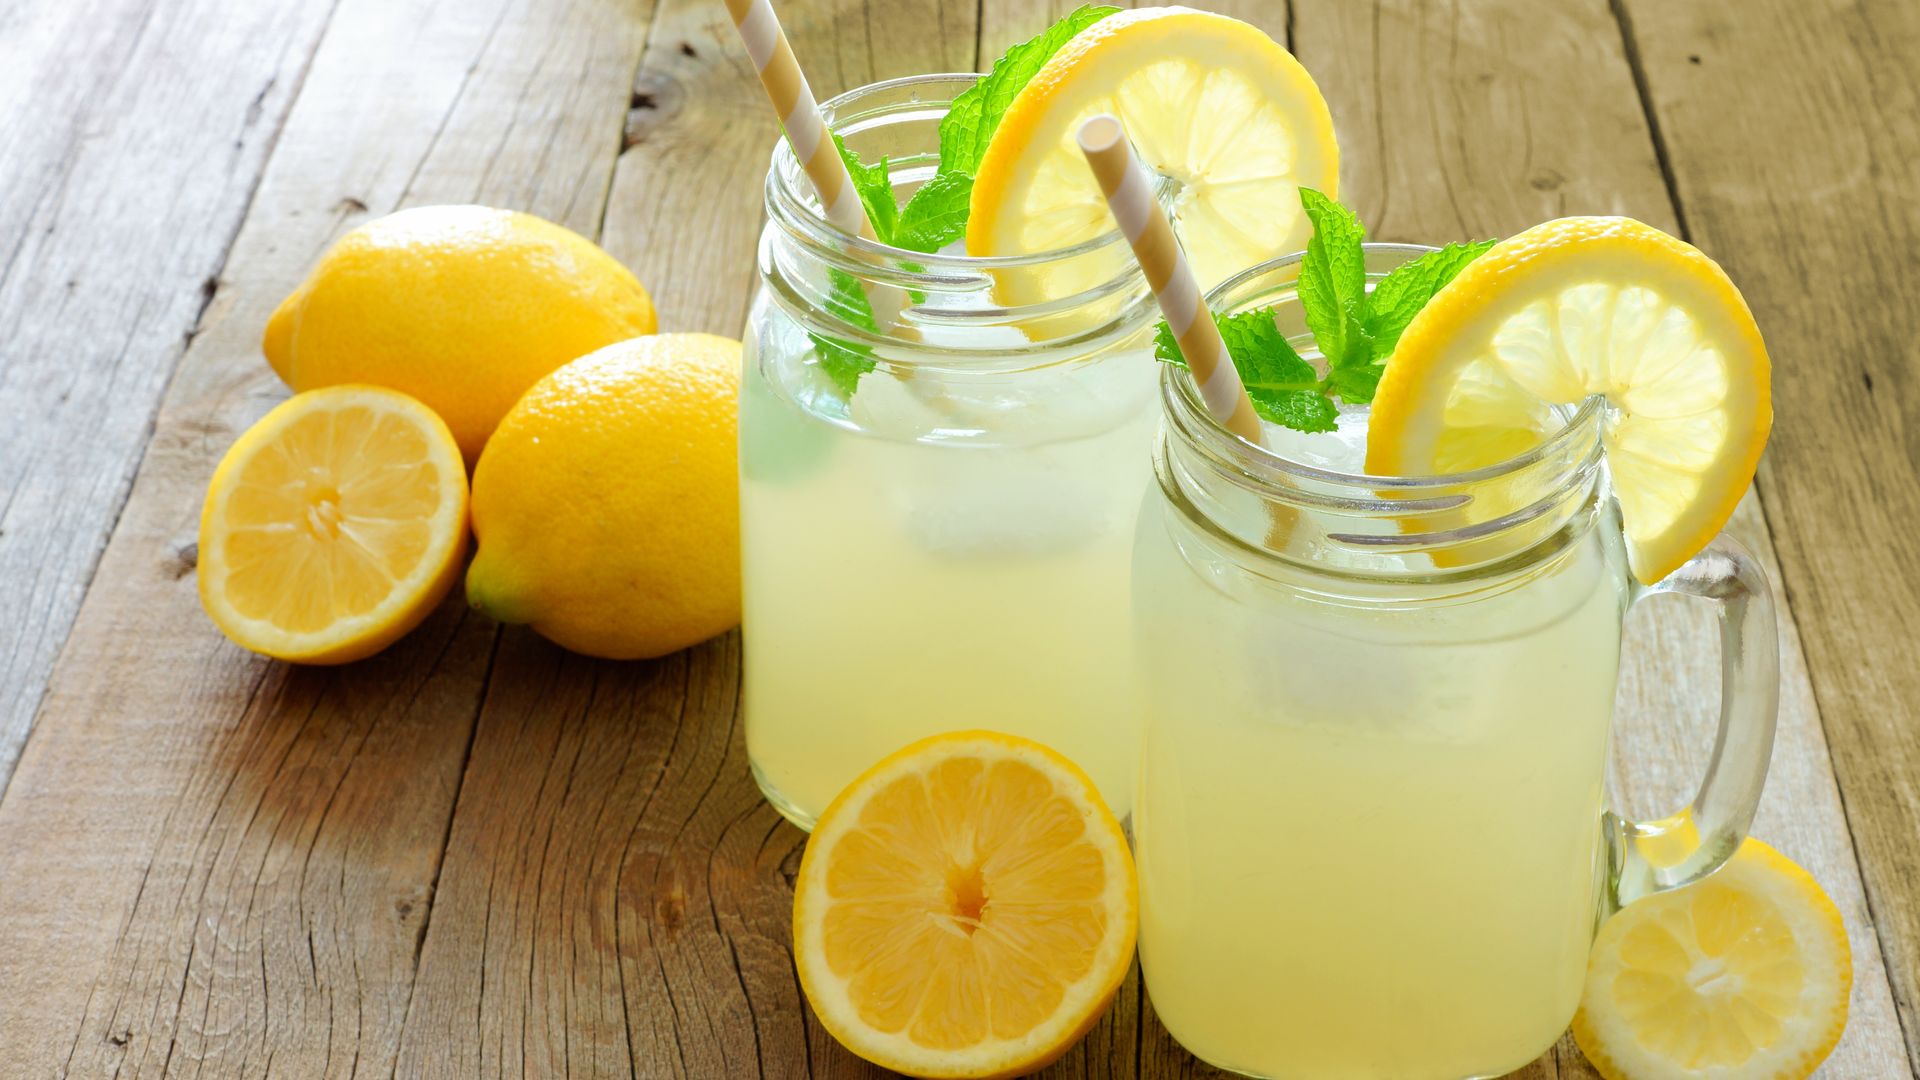 Limonata nasıl yapılır? İçinizi ferahlatacak limonata tarifleri!